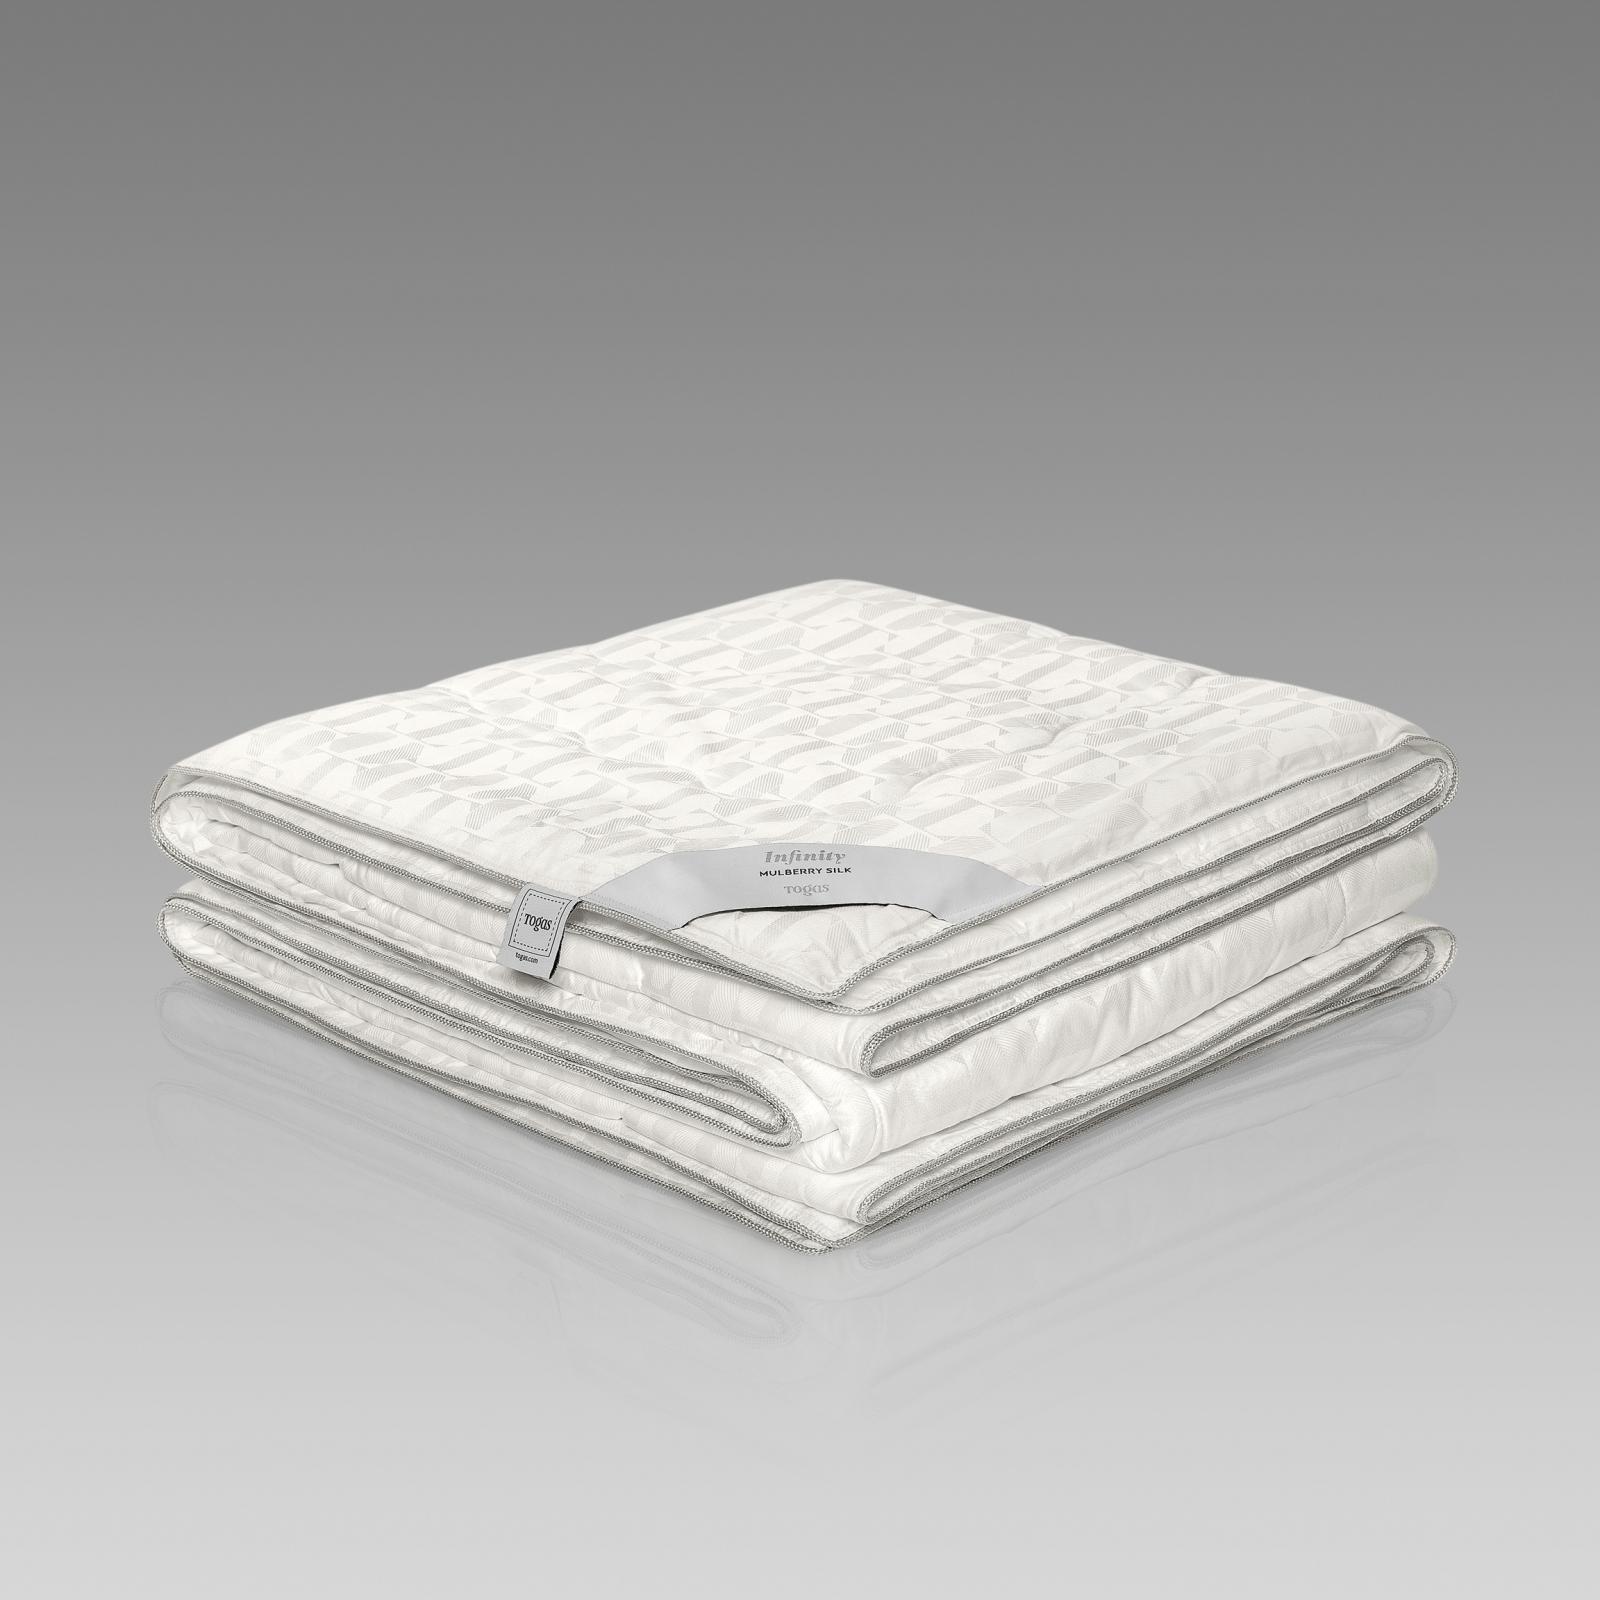 Одеяло Togas Инфинити 200х210 см (20.04.16.0110) одеяло togas кайзер белое 200х210 см